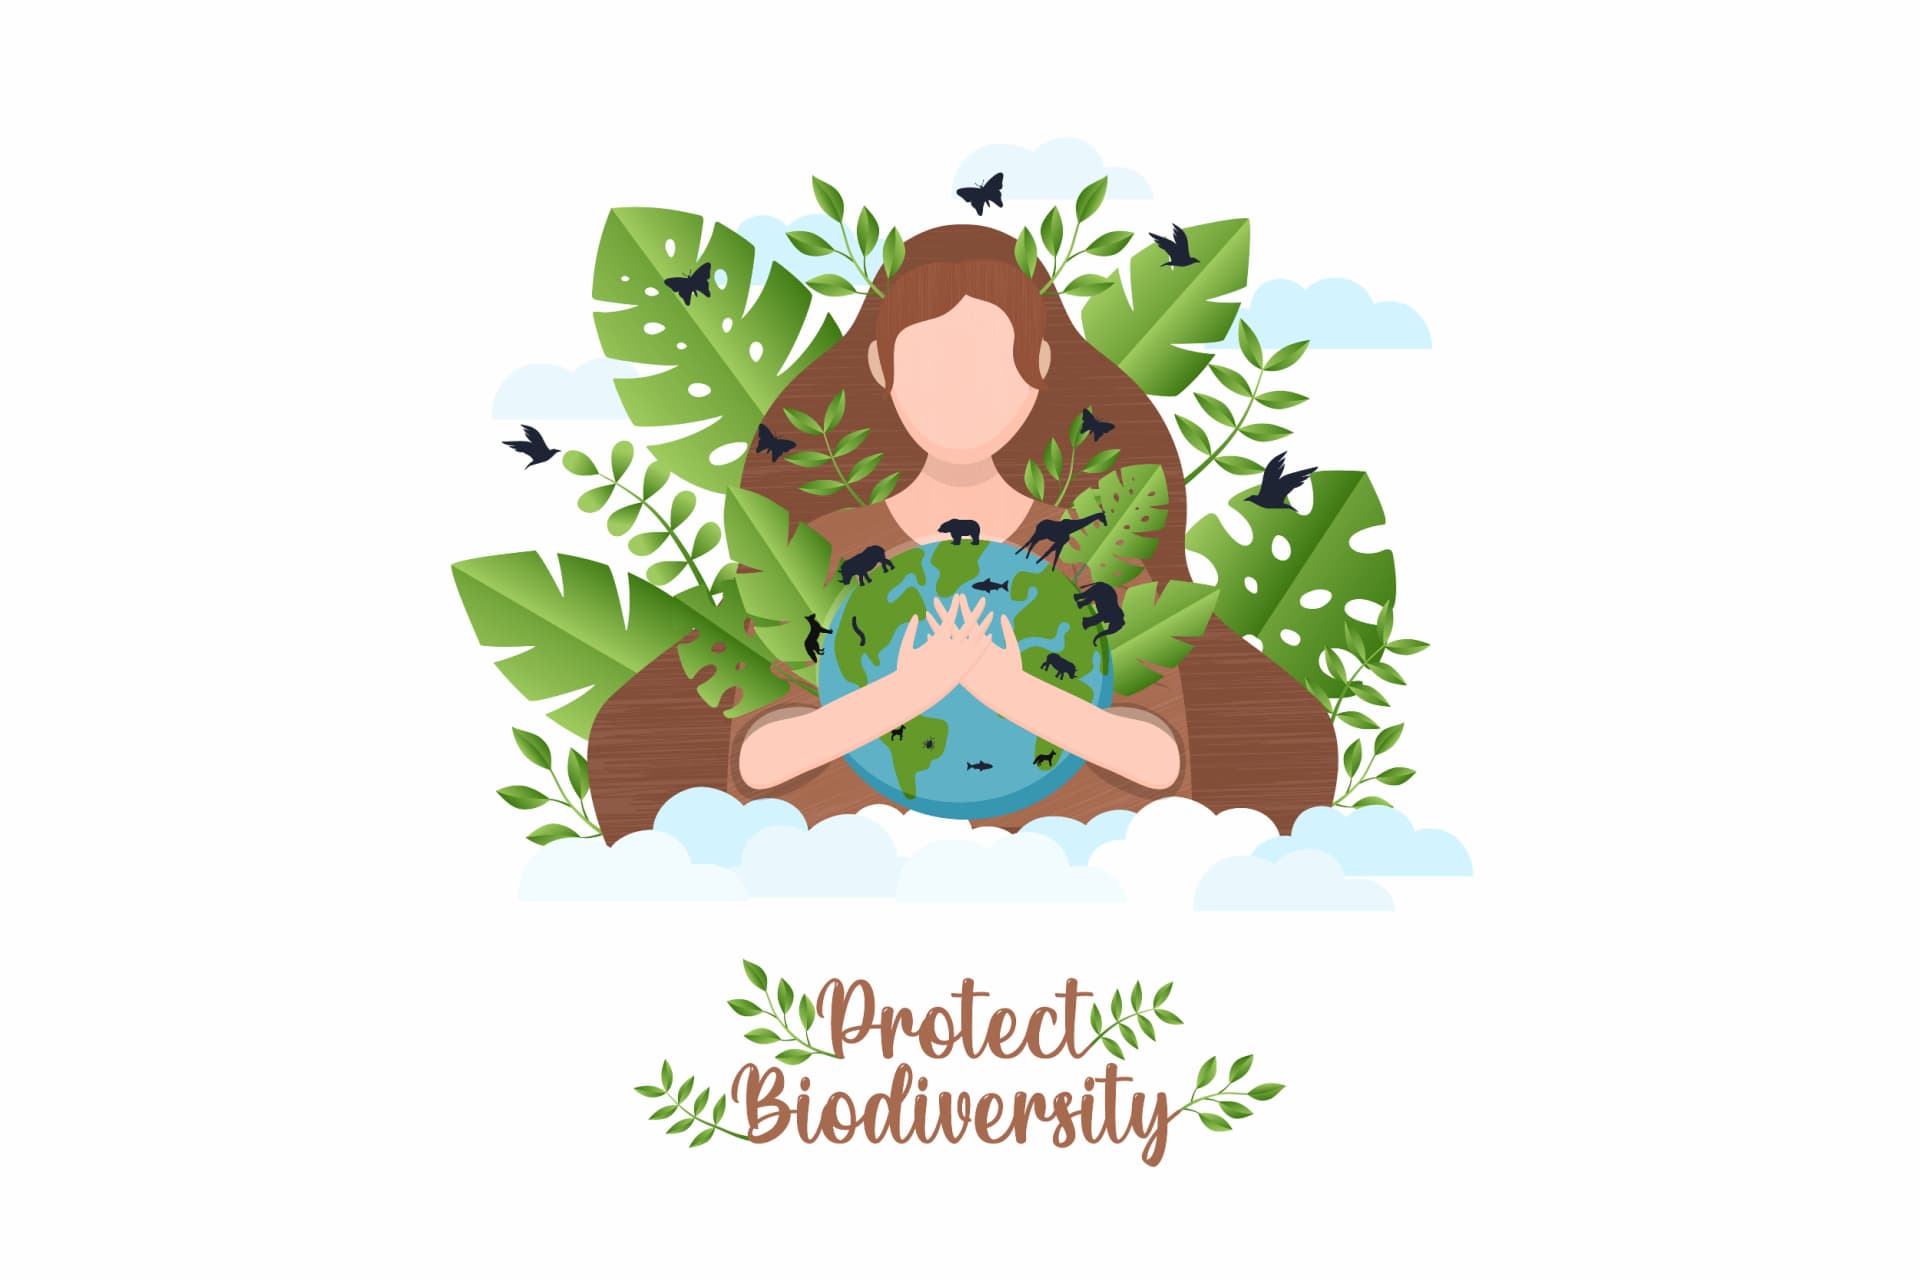 Proteggere la biodiversità: un'illustrazione